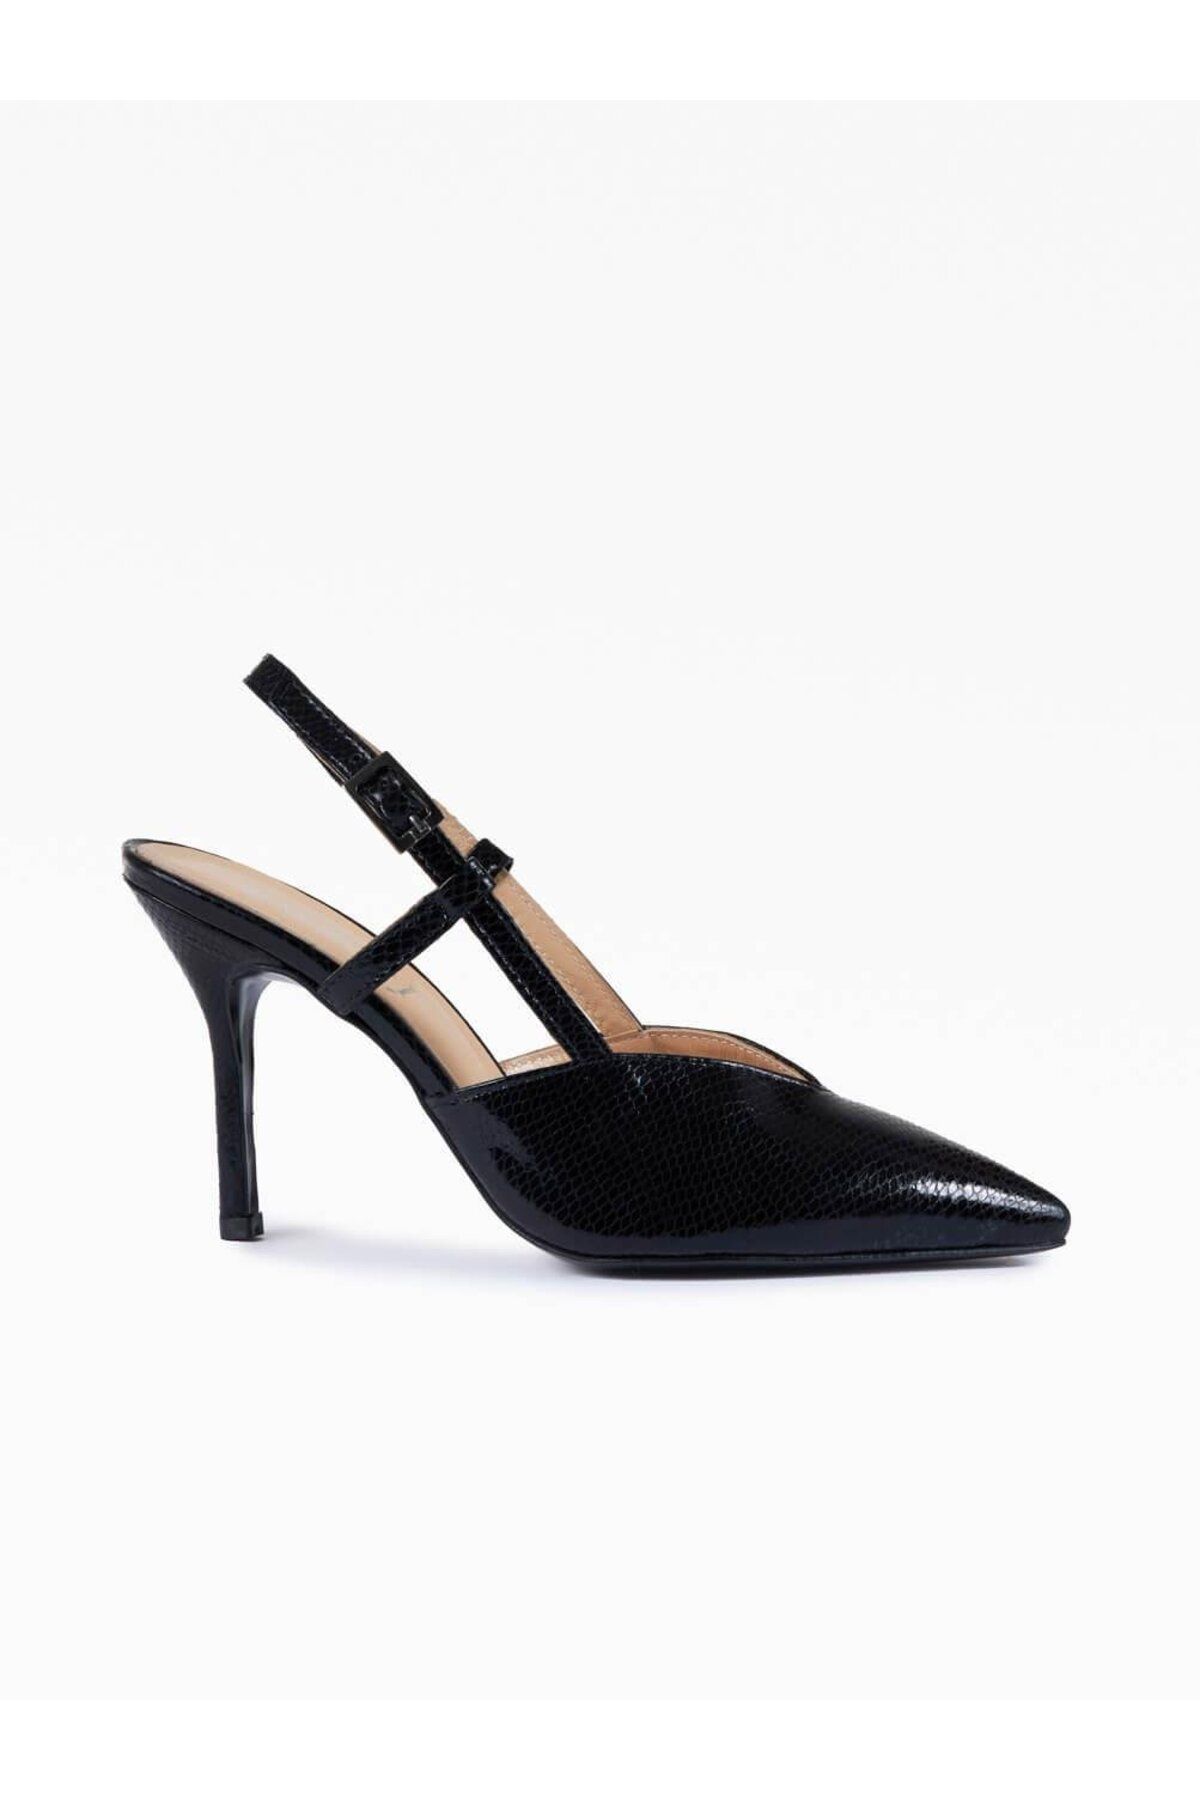 Favgi Lela Siyah Deri Kadın Topuklu Ayakkabı